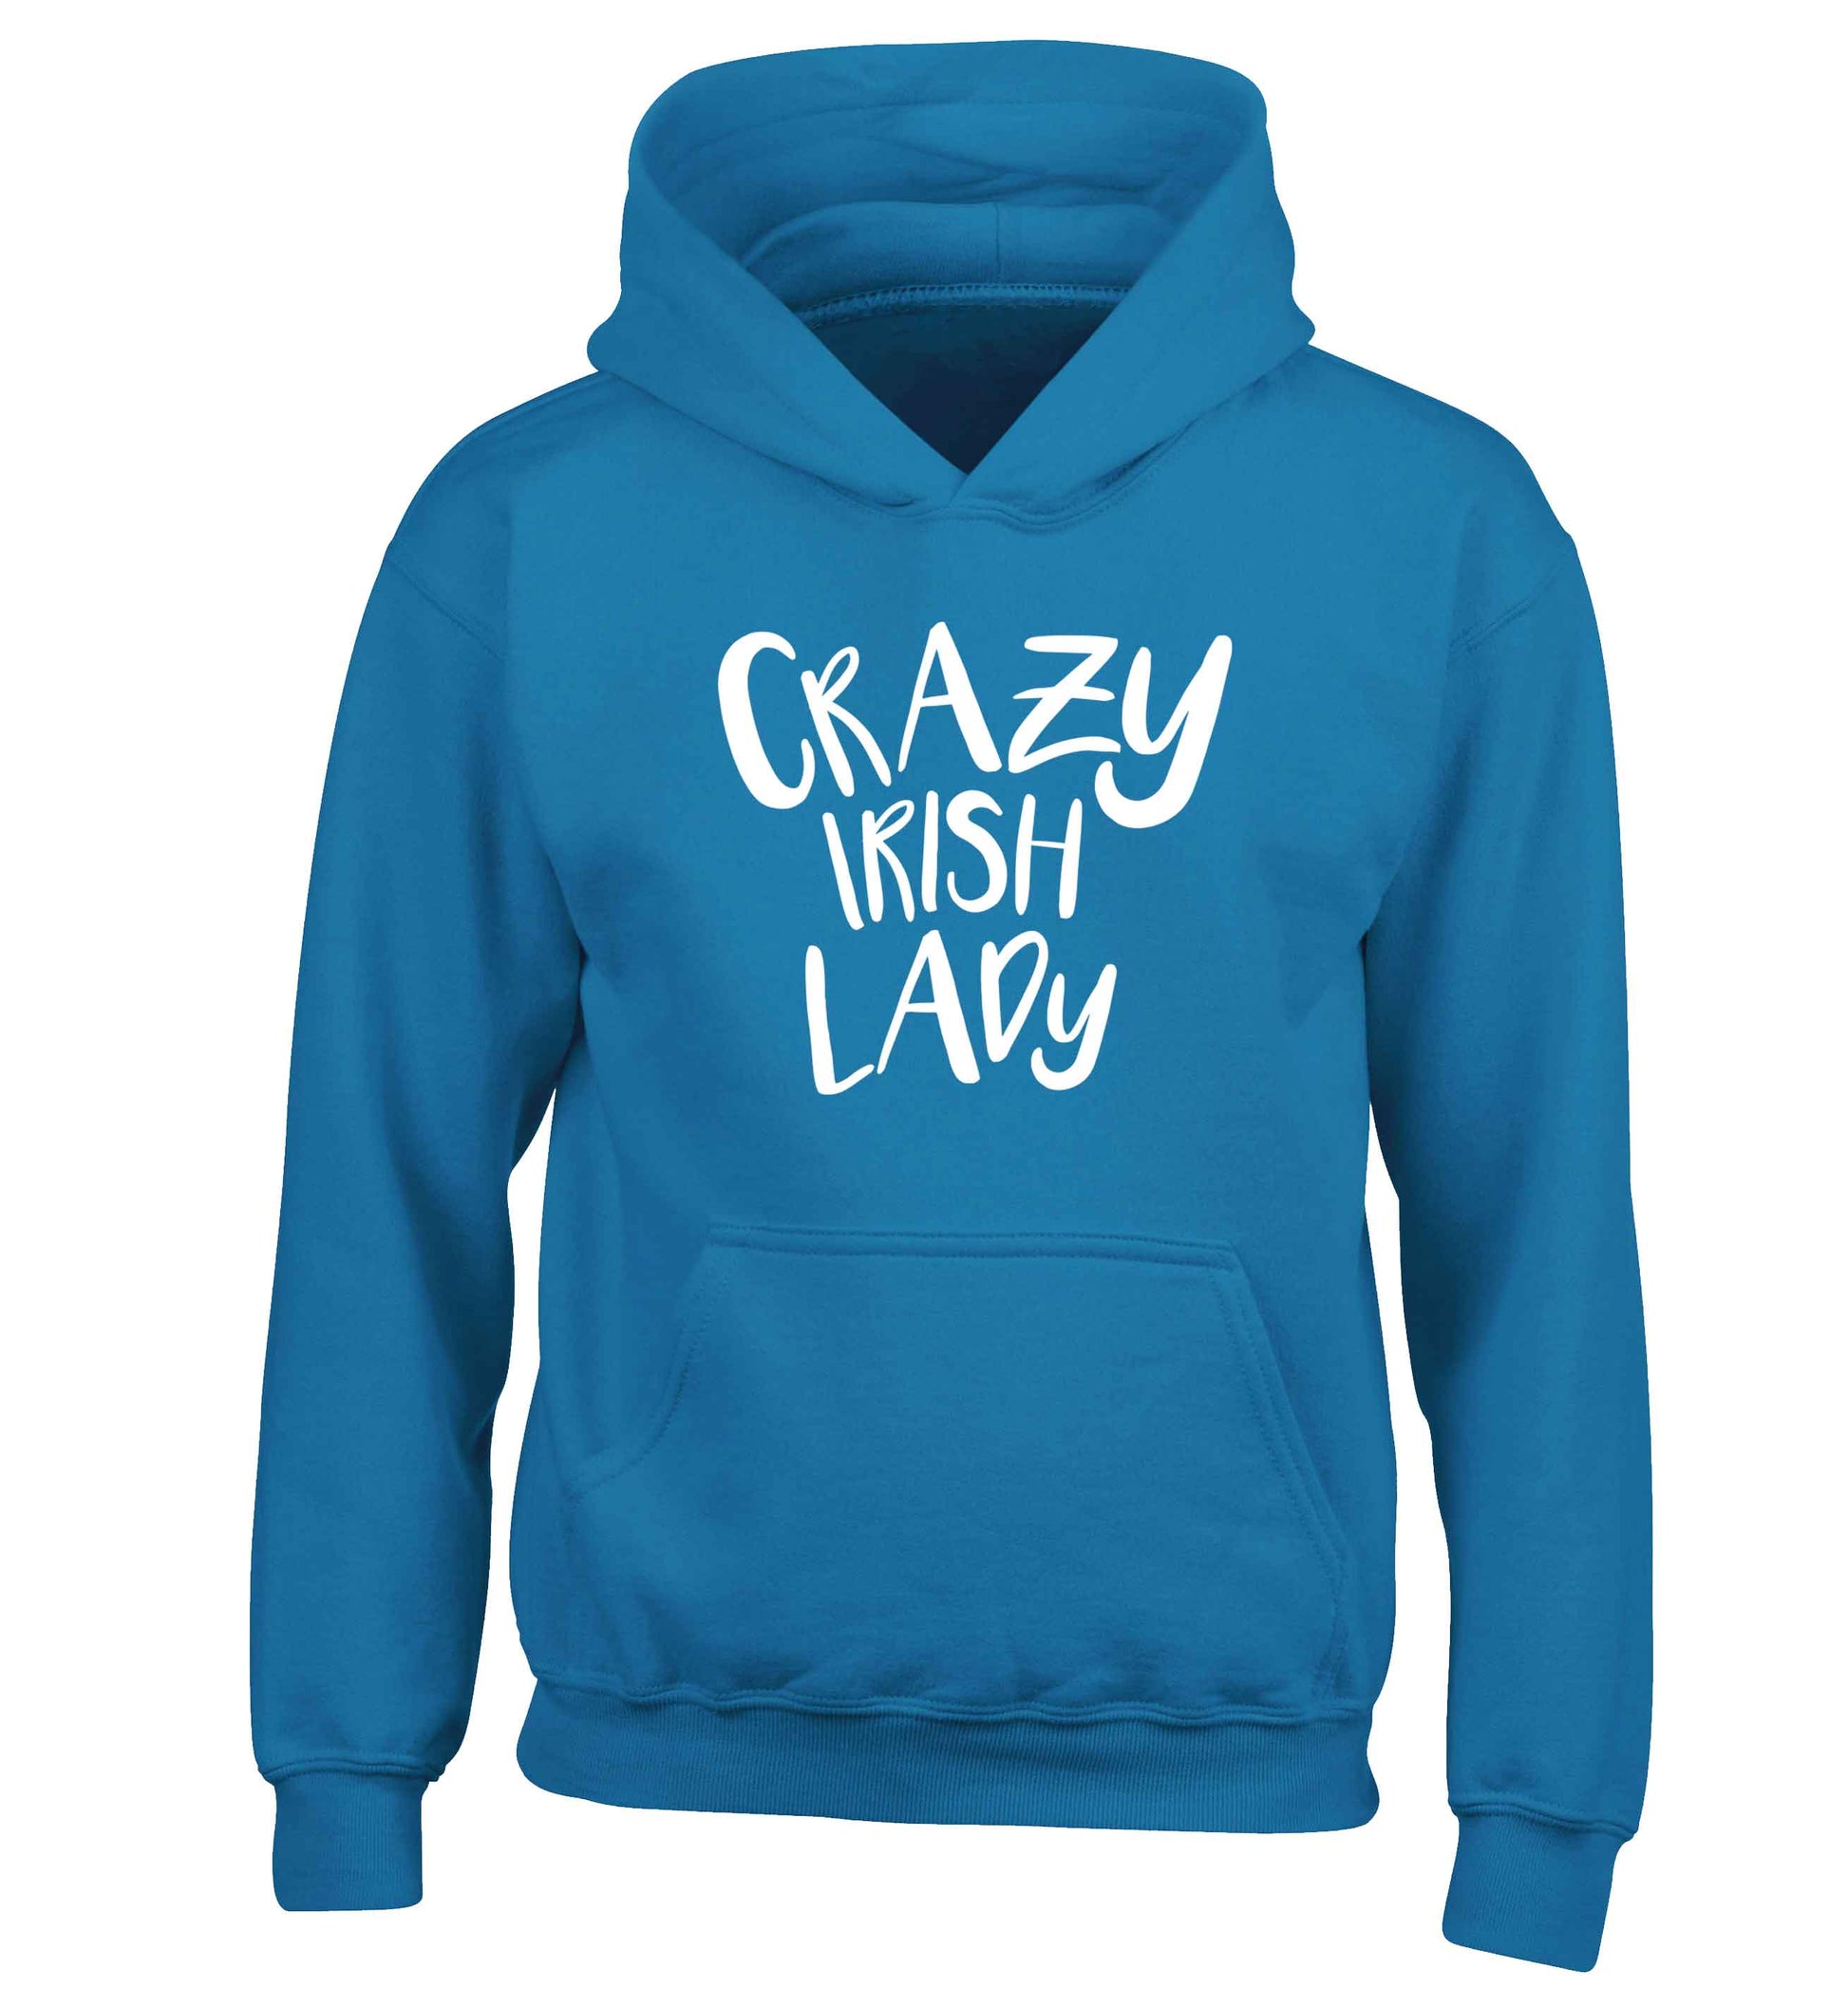 Crazy Irish lady children's blue hoodie 12-13 Years